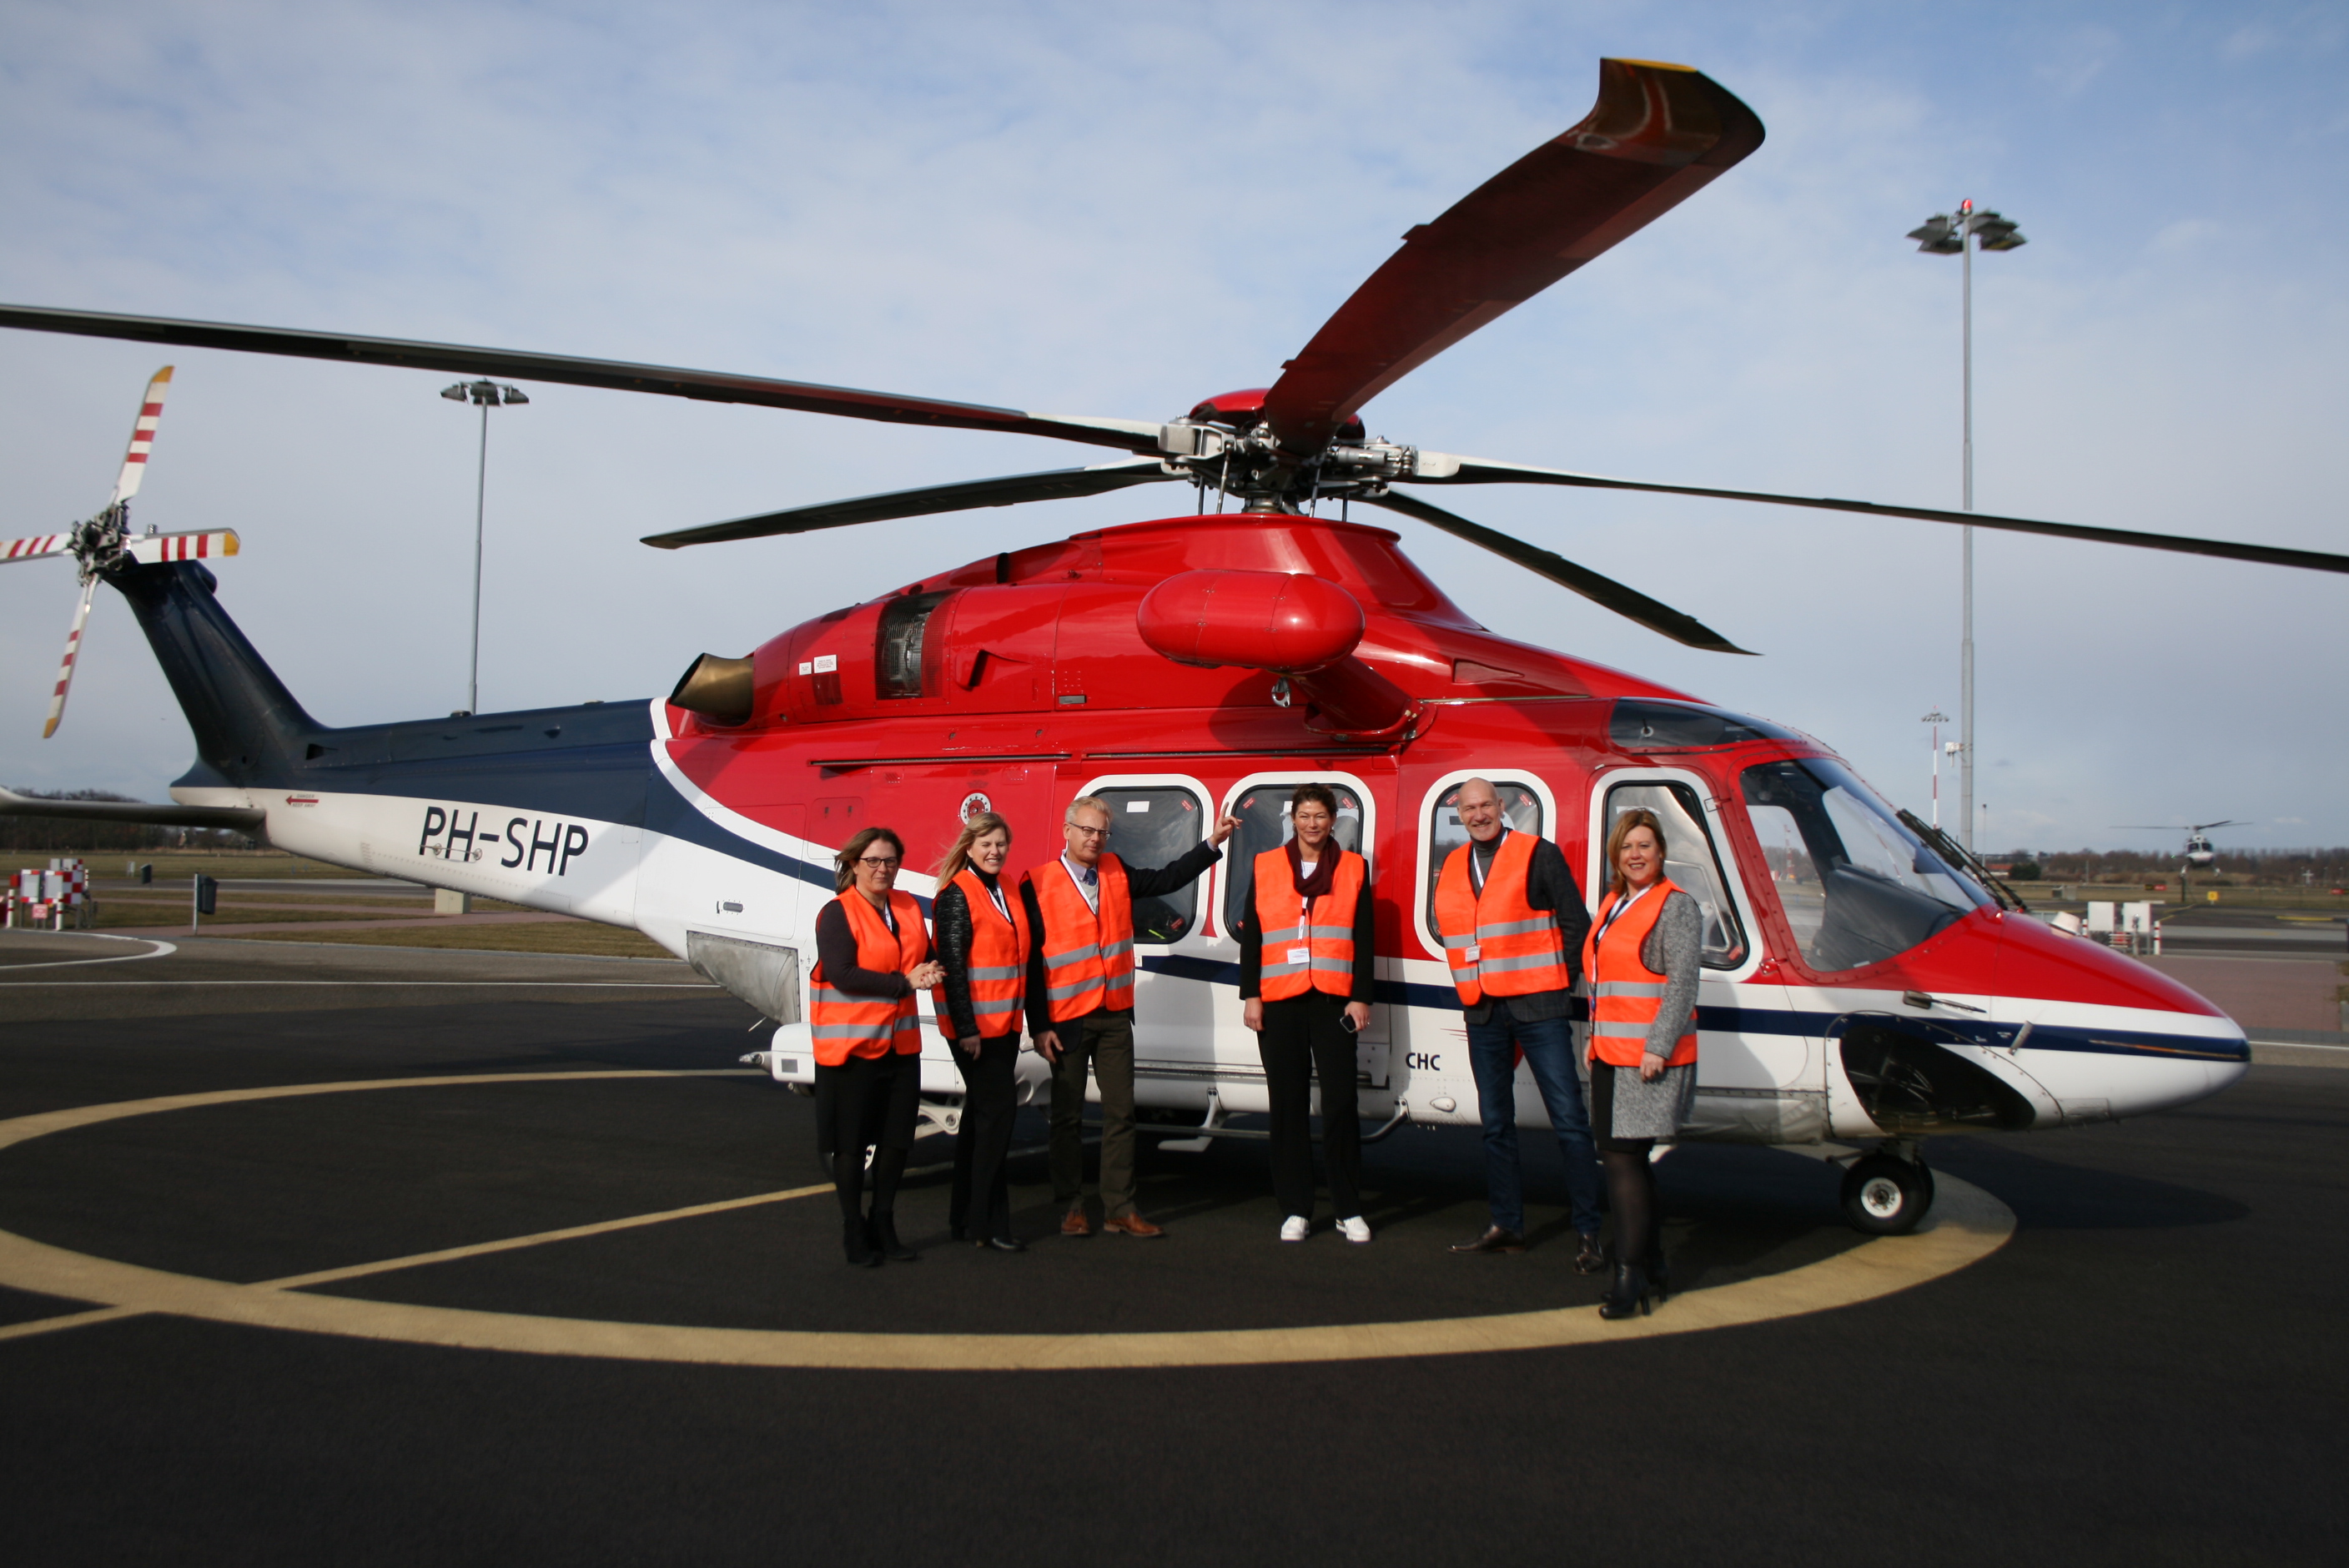 Den Helder Airport als basis voor nieuwe Europese samenwerking omtrent toekomstige offshore helikopteroperaties